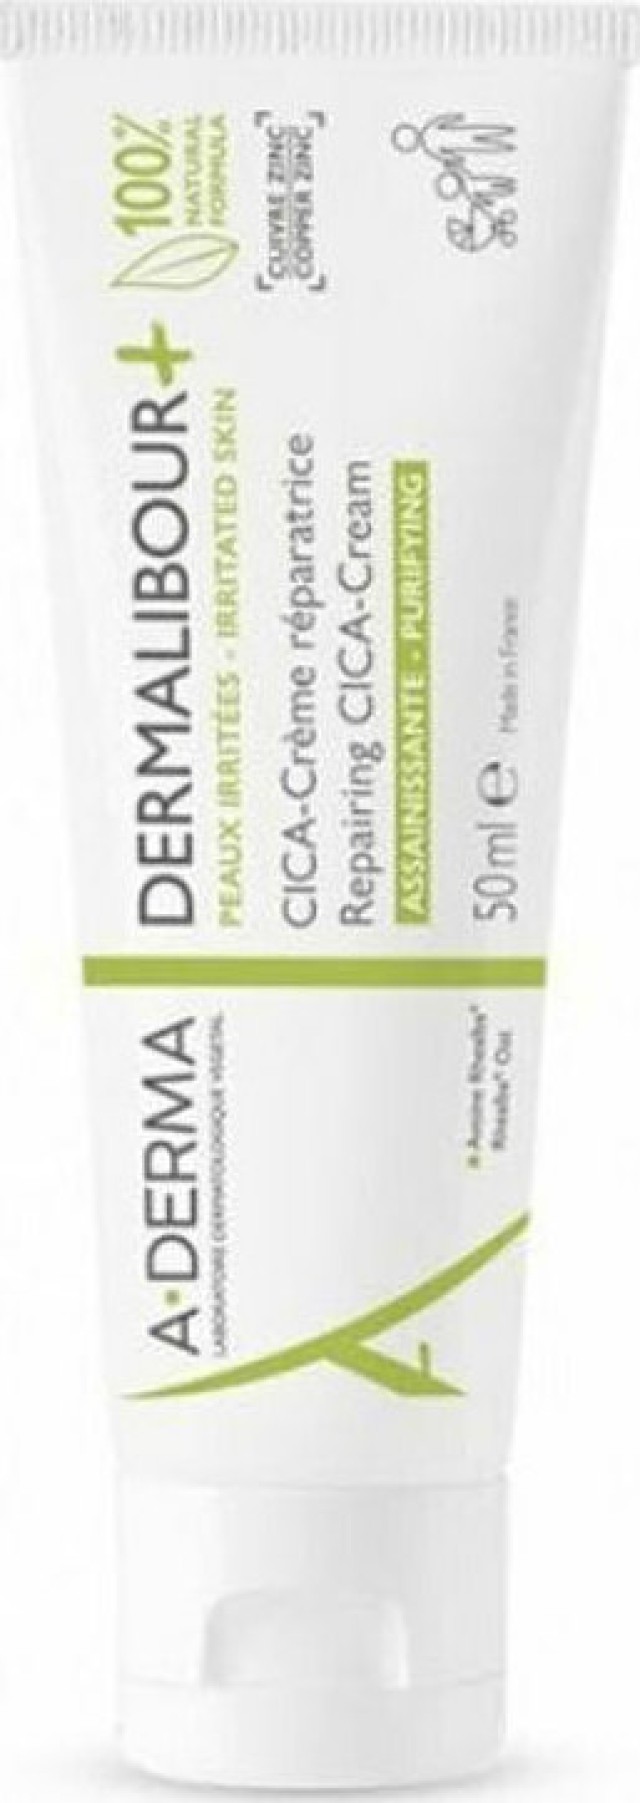 A-Derma Dermalibour+ Cica Cream Επανορθωτική - Εξυγιαντική Κρέμα για Πρόσωπο - Σώμα για την Επανόρθωση της Ερεθισμένης και Εύθραυστης Επιδερμίδας 50ml